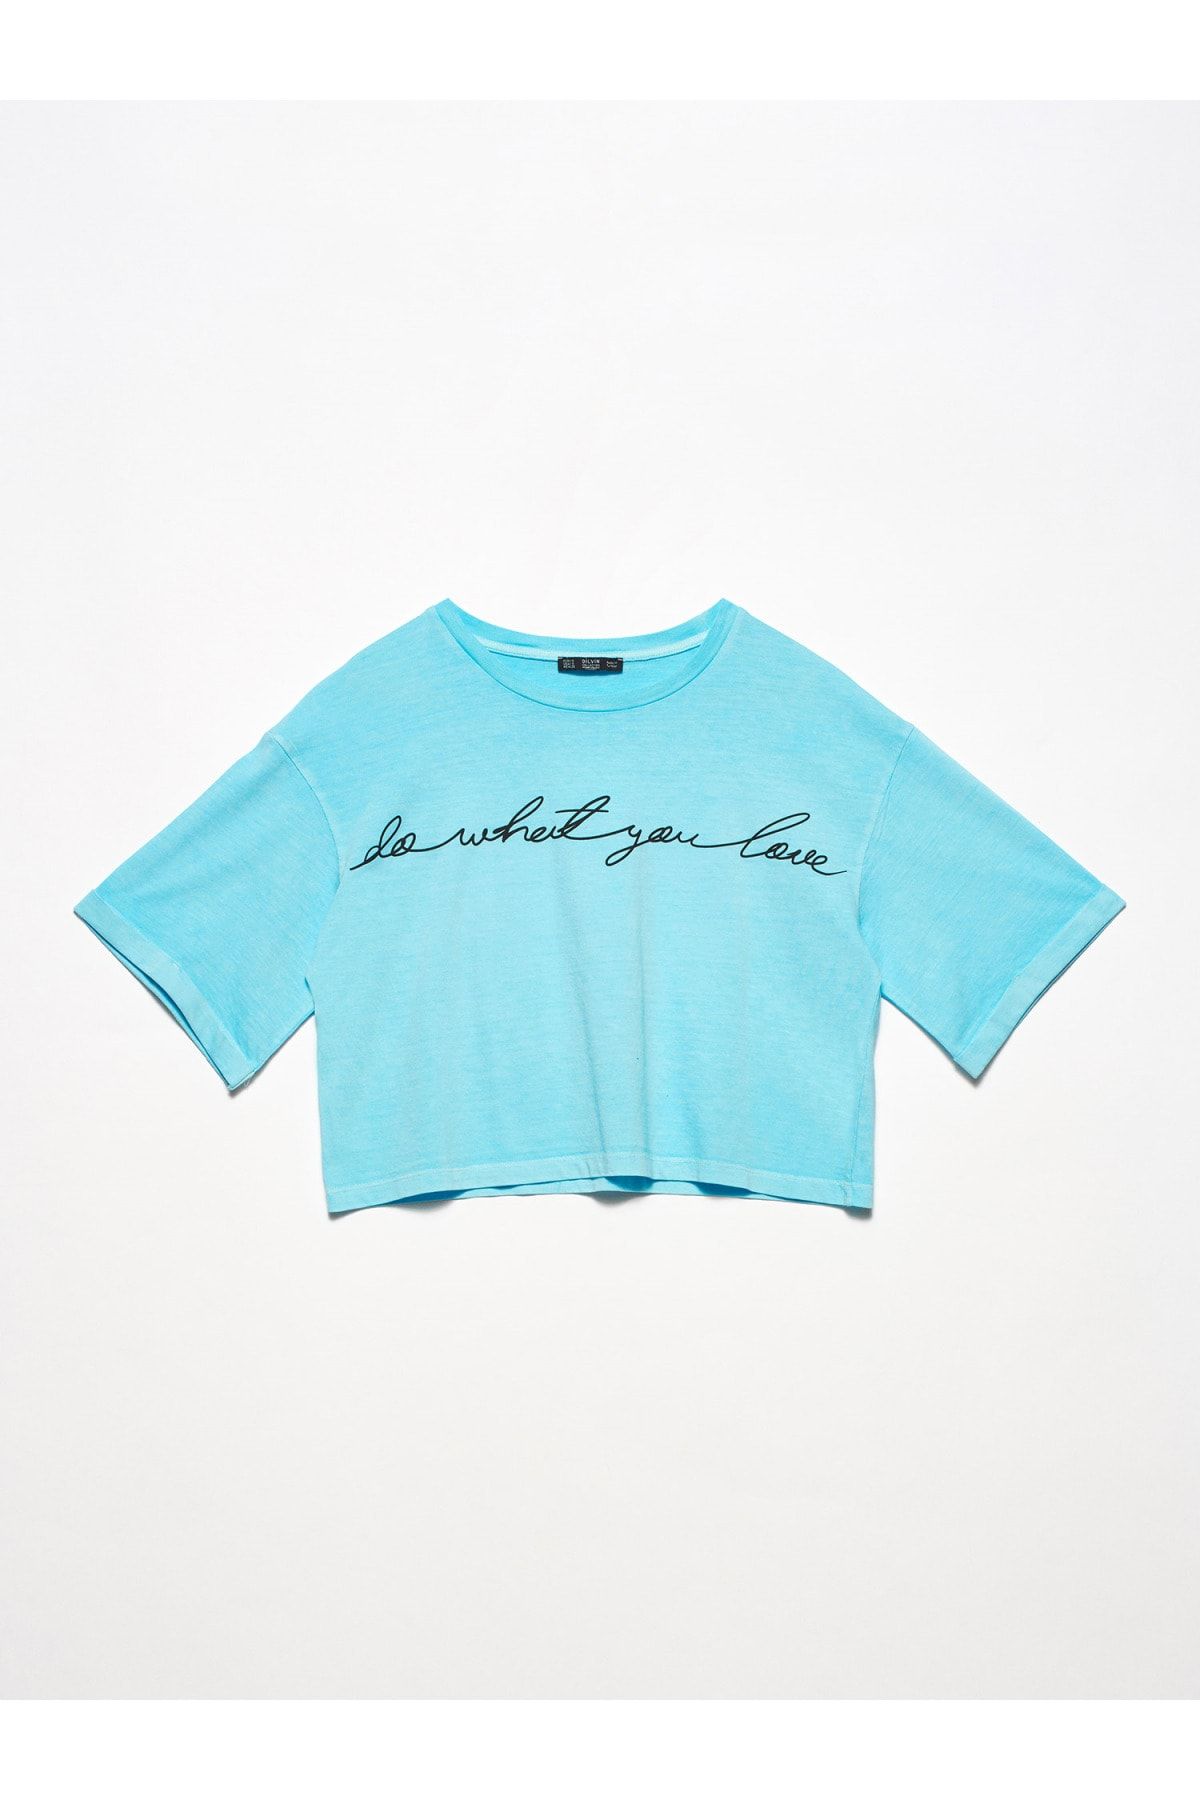 Dilvin Kadın Mavi Baskılı Salaş T-Shirt 101A03537